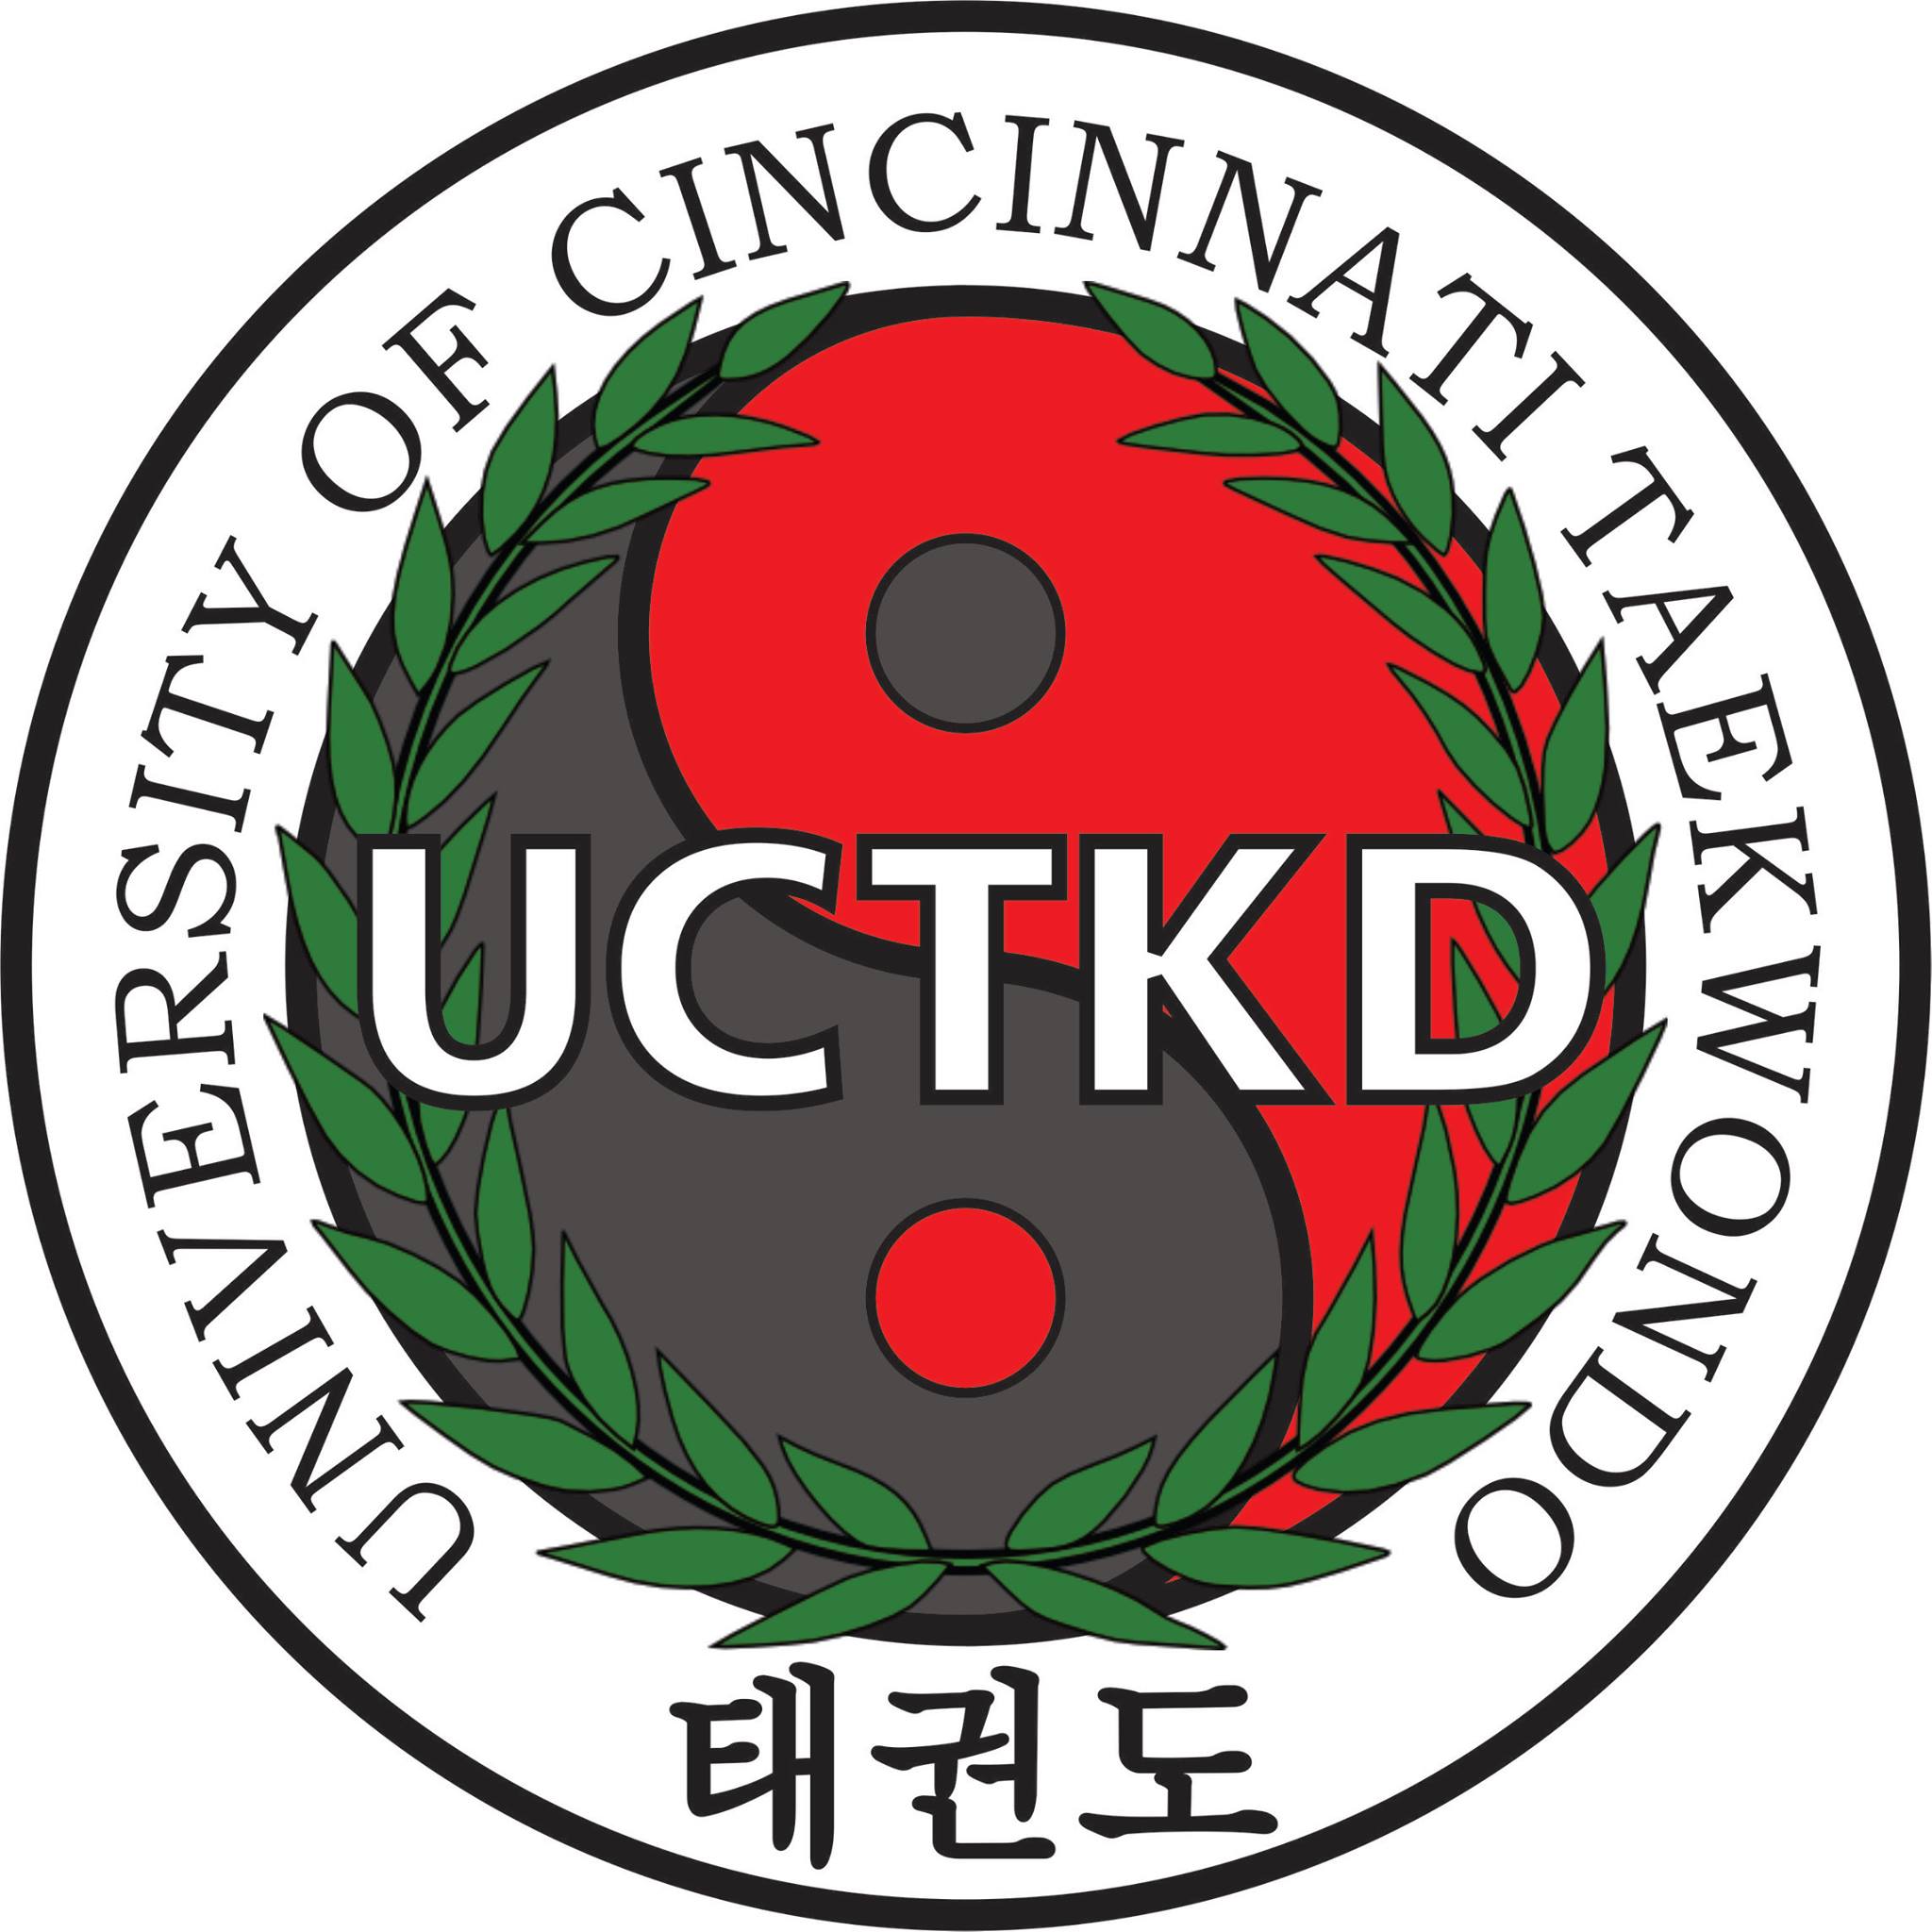 UC Taekwondo Club